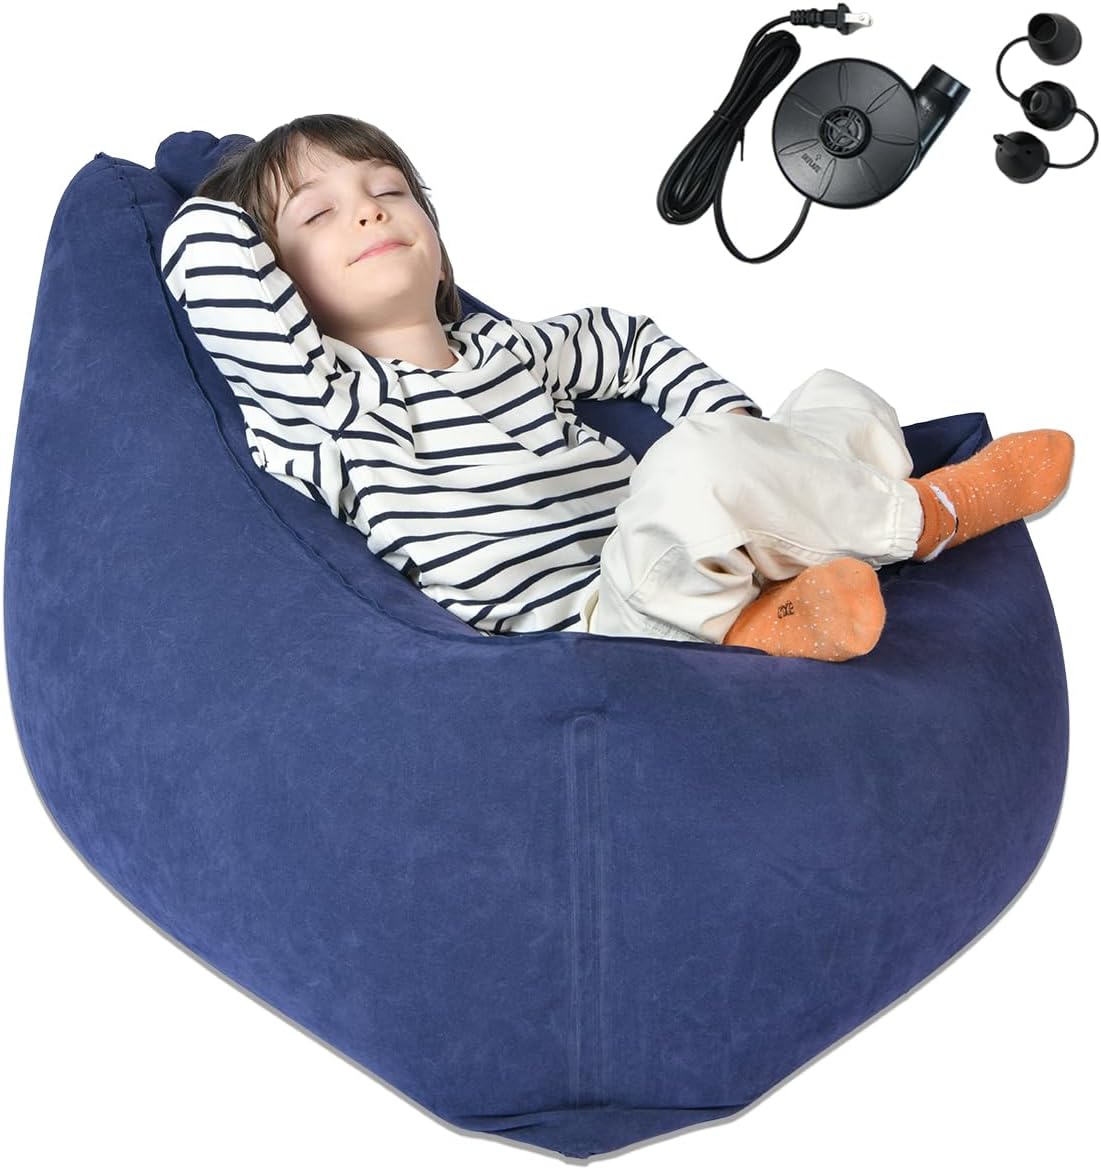 inflatable sensory chair for kids sensory room